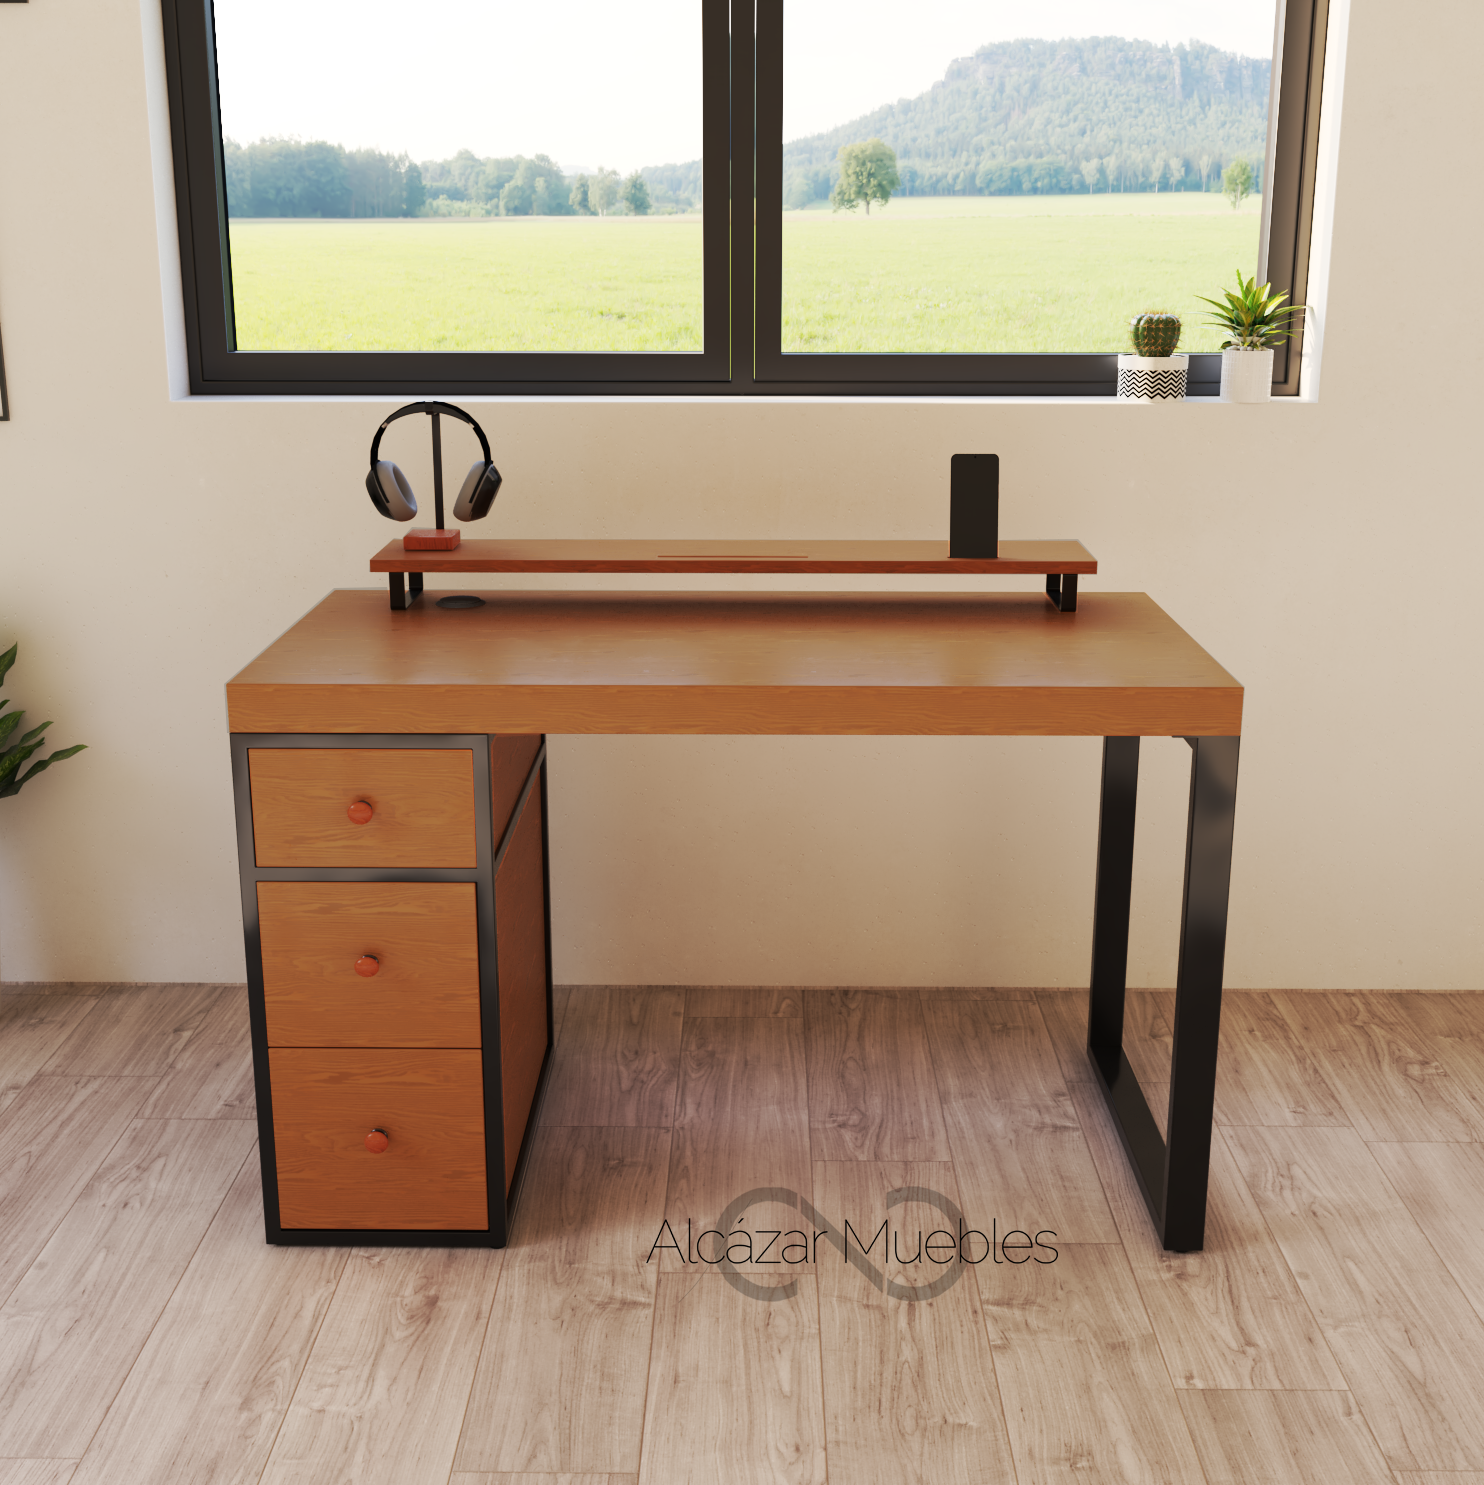 Minimalista escritorio gamer. 120 cm de largo con 6 cajones de madera y 1 repisa superior. Color cedro